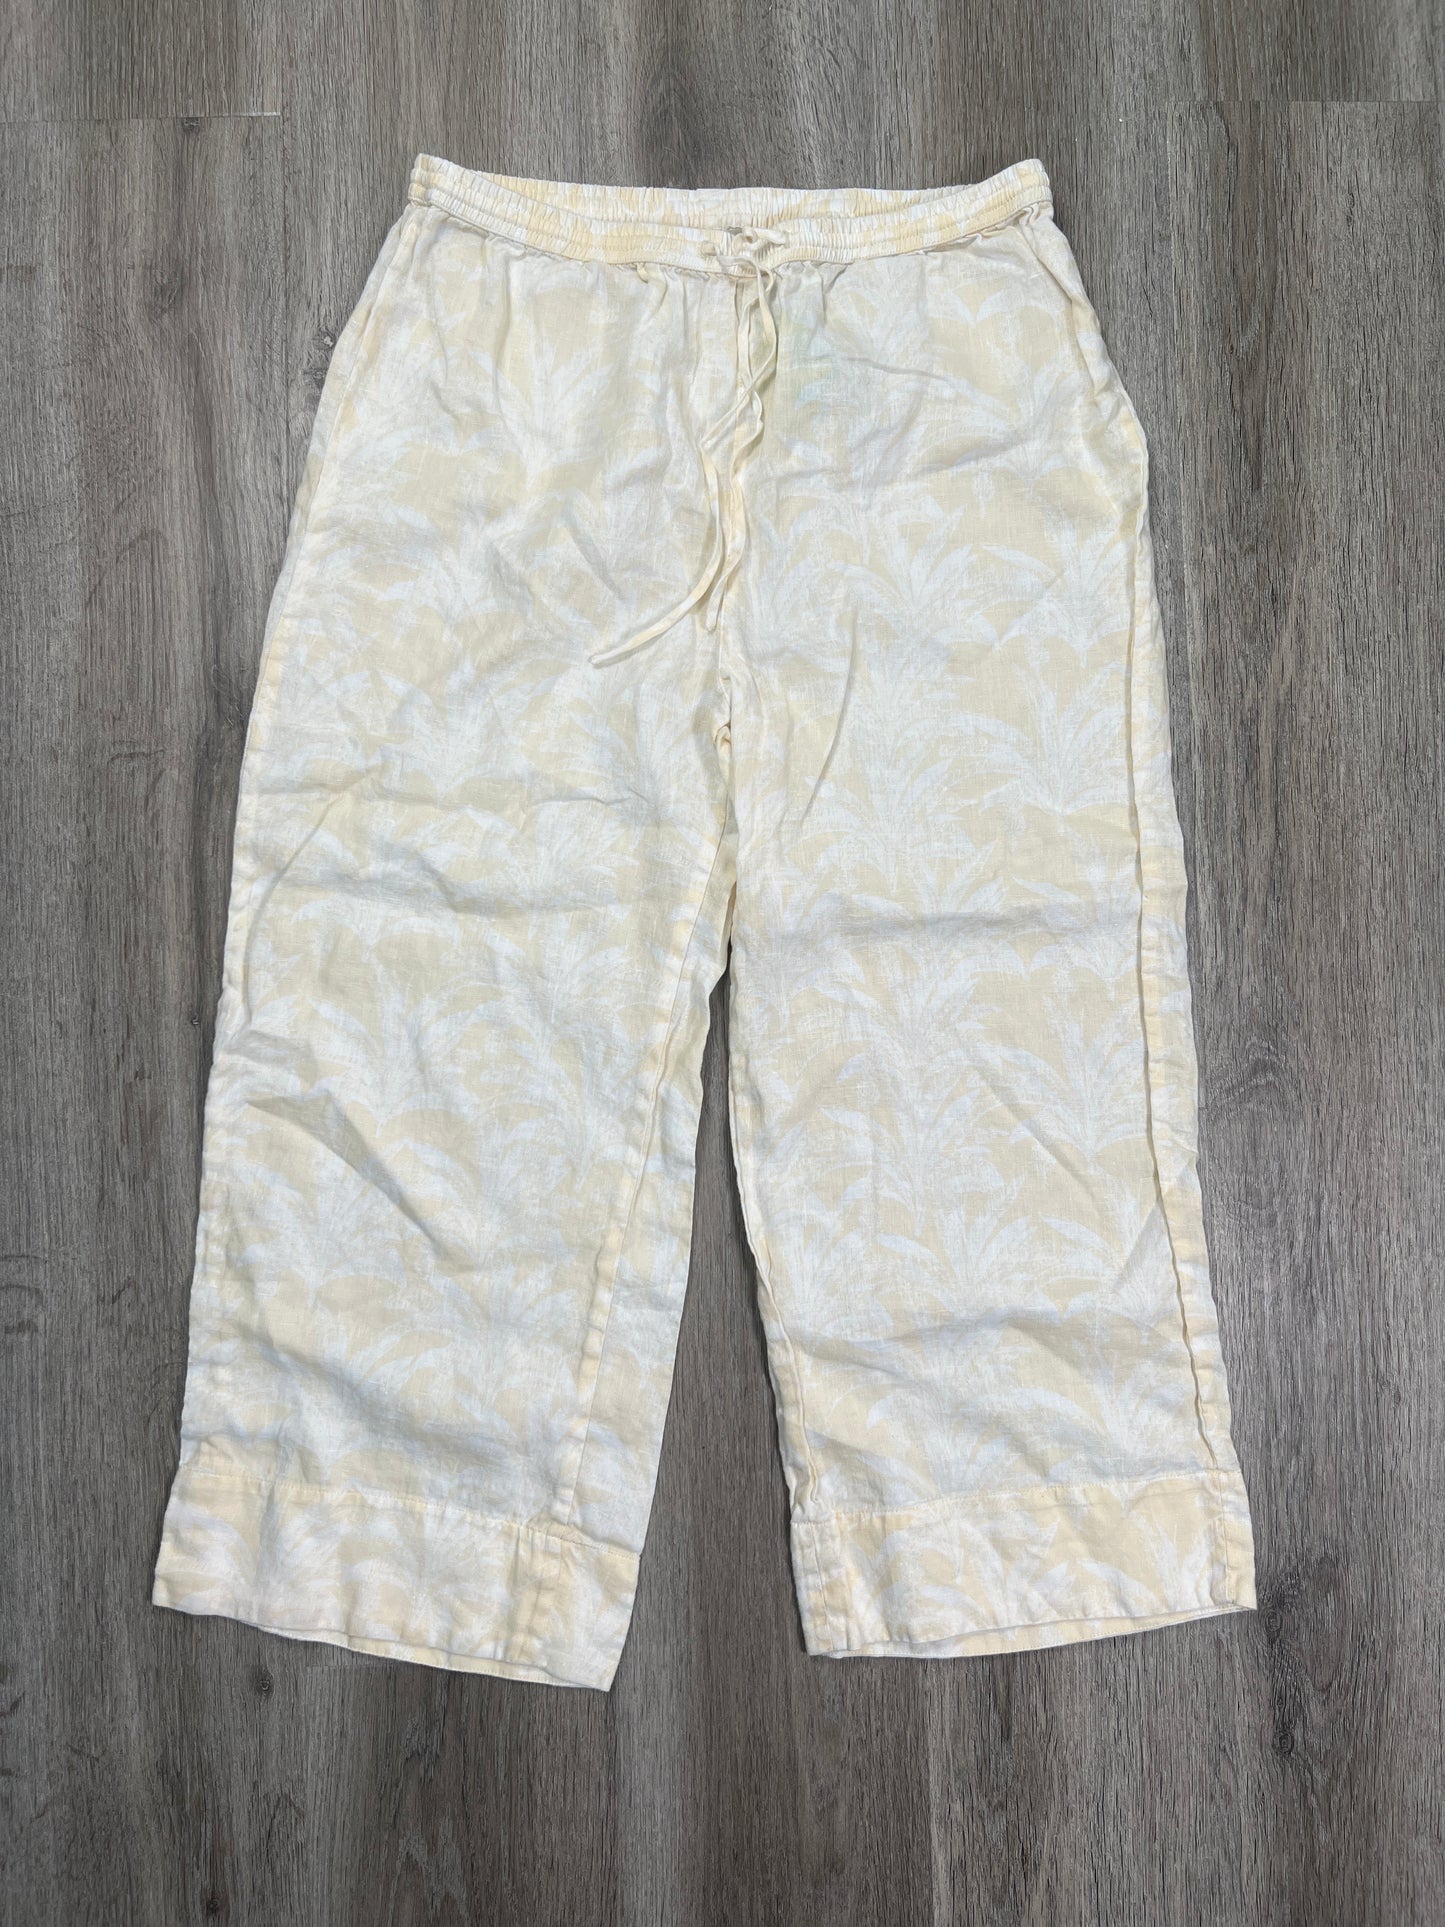 Pants Linen By Banana Republic  Size: M